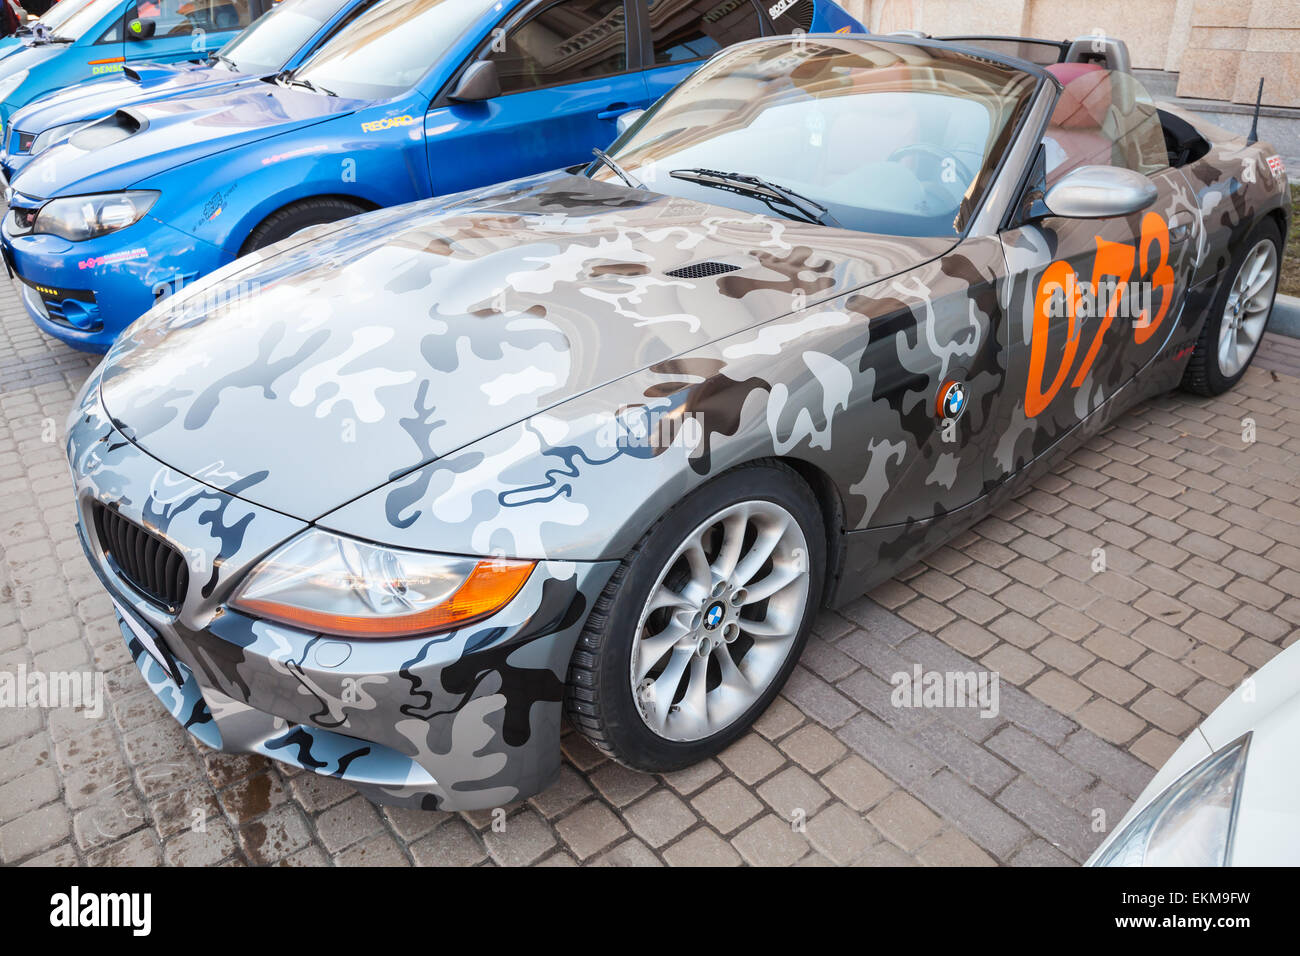 Saint-pétersbourg, Russie - le 11 avril 2015 : BMW Z4 roadster voiture avec des couleurs de camouflage se stratifie sur rue Banque D'Images